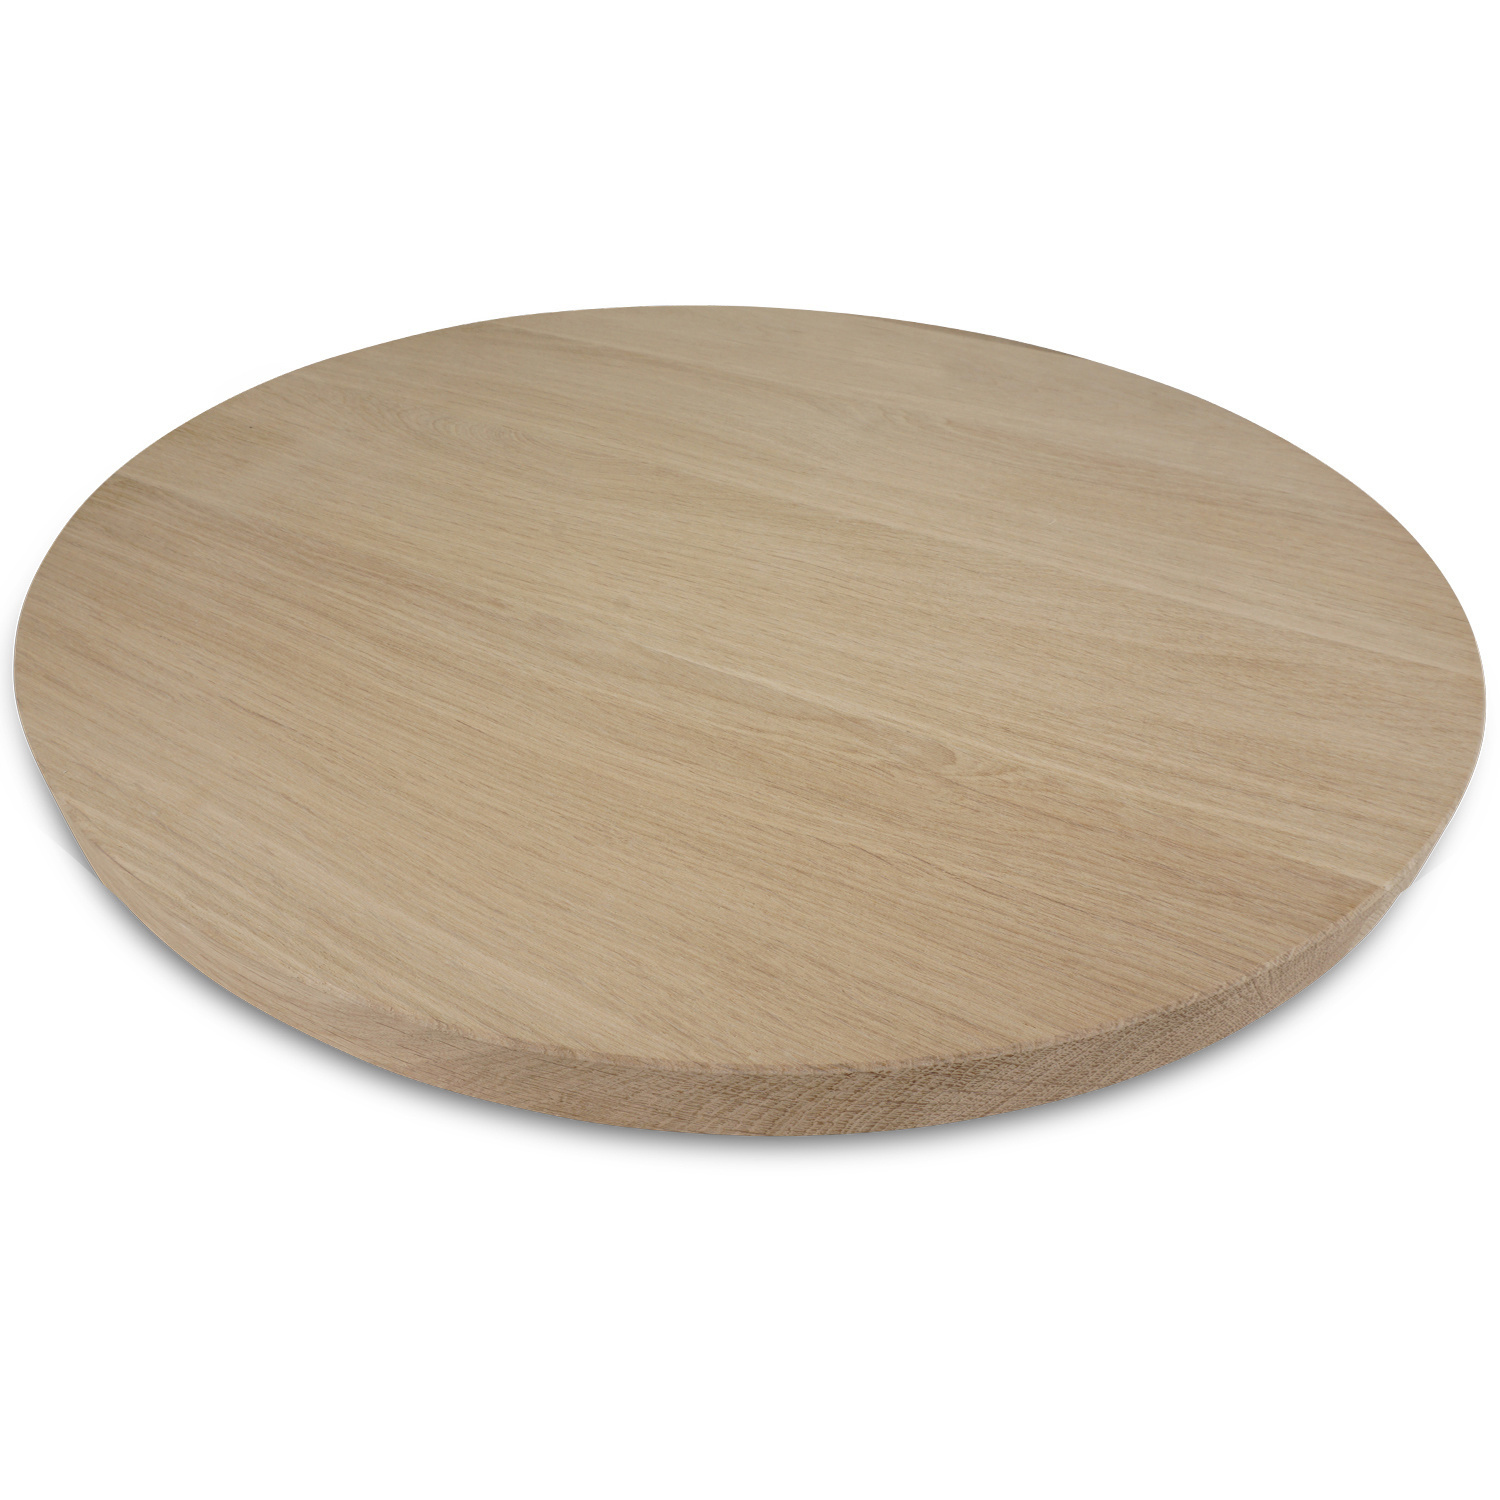  Rond eiken tafelblad op maat - 2,7 cm dik (1-laag) - foutvrij Europees eikenhout - met brede lamellen (circa 10-12 cm) - verlijmd kd 8-12% - diameter van 35 tot 117 cm